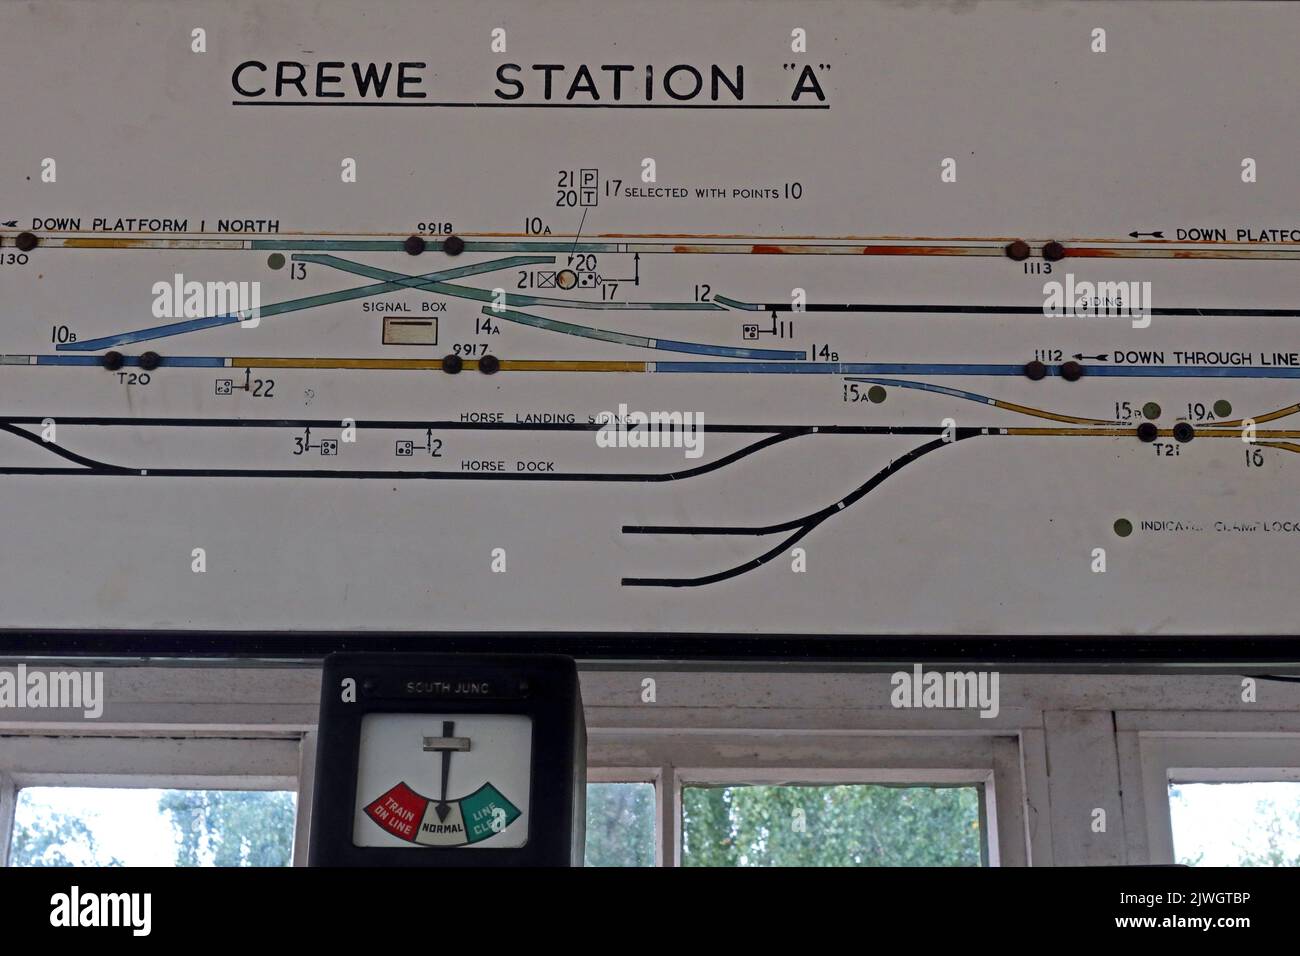 Carte schématique de la boîte de signalisation traditionnelle victorienne, Crewe Station A, à Cheshire, Angleterre, Royaume-Uni, CW1 2DB Banque D'Images